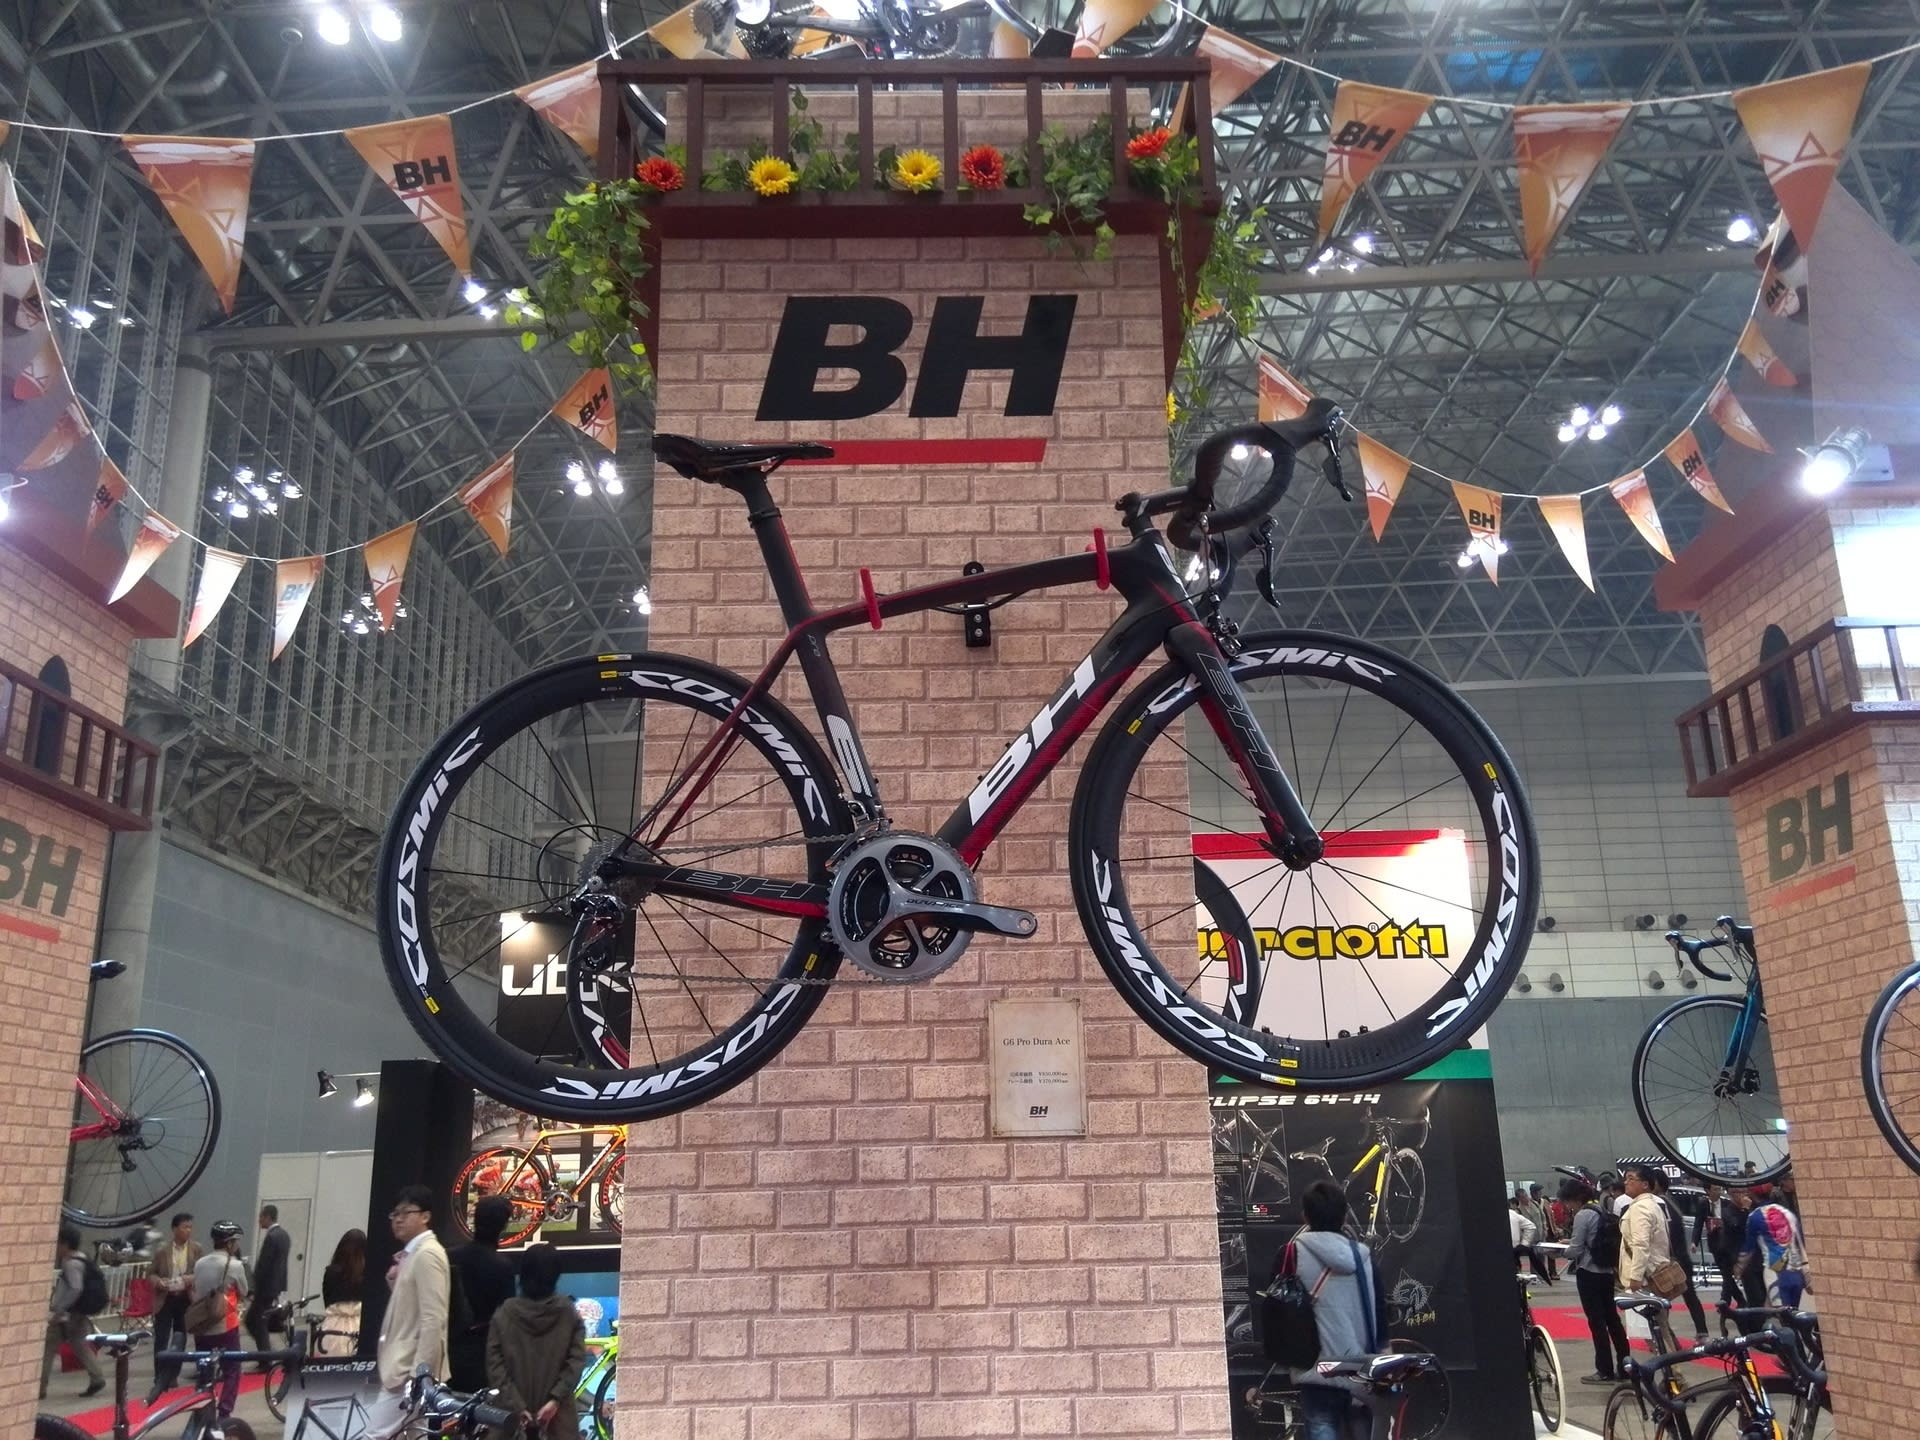 Bh ロードバイク 吉崎サイクル 富山県黒部市 のブログ